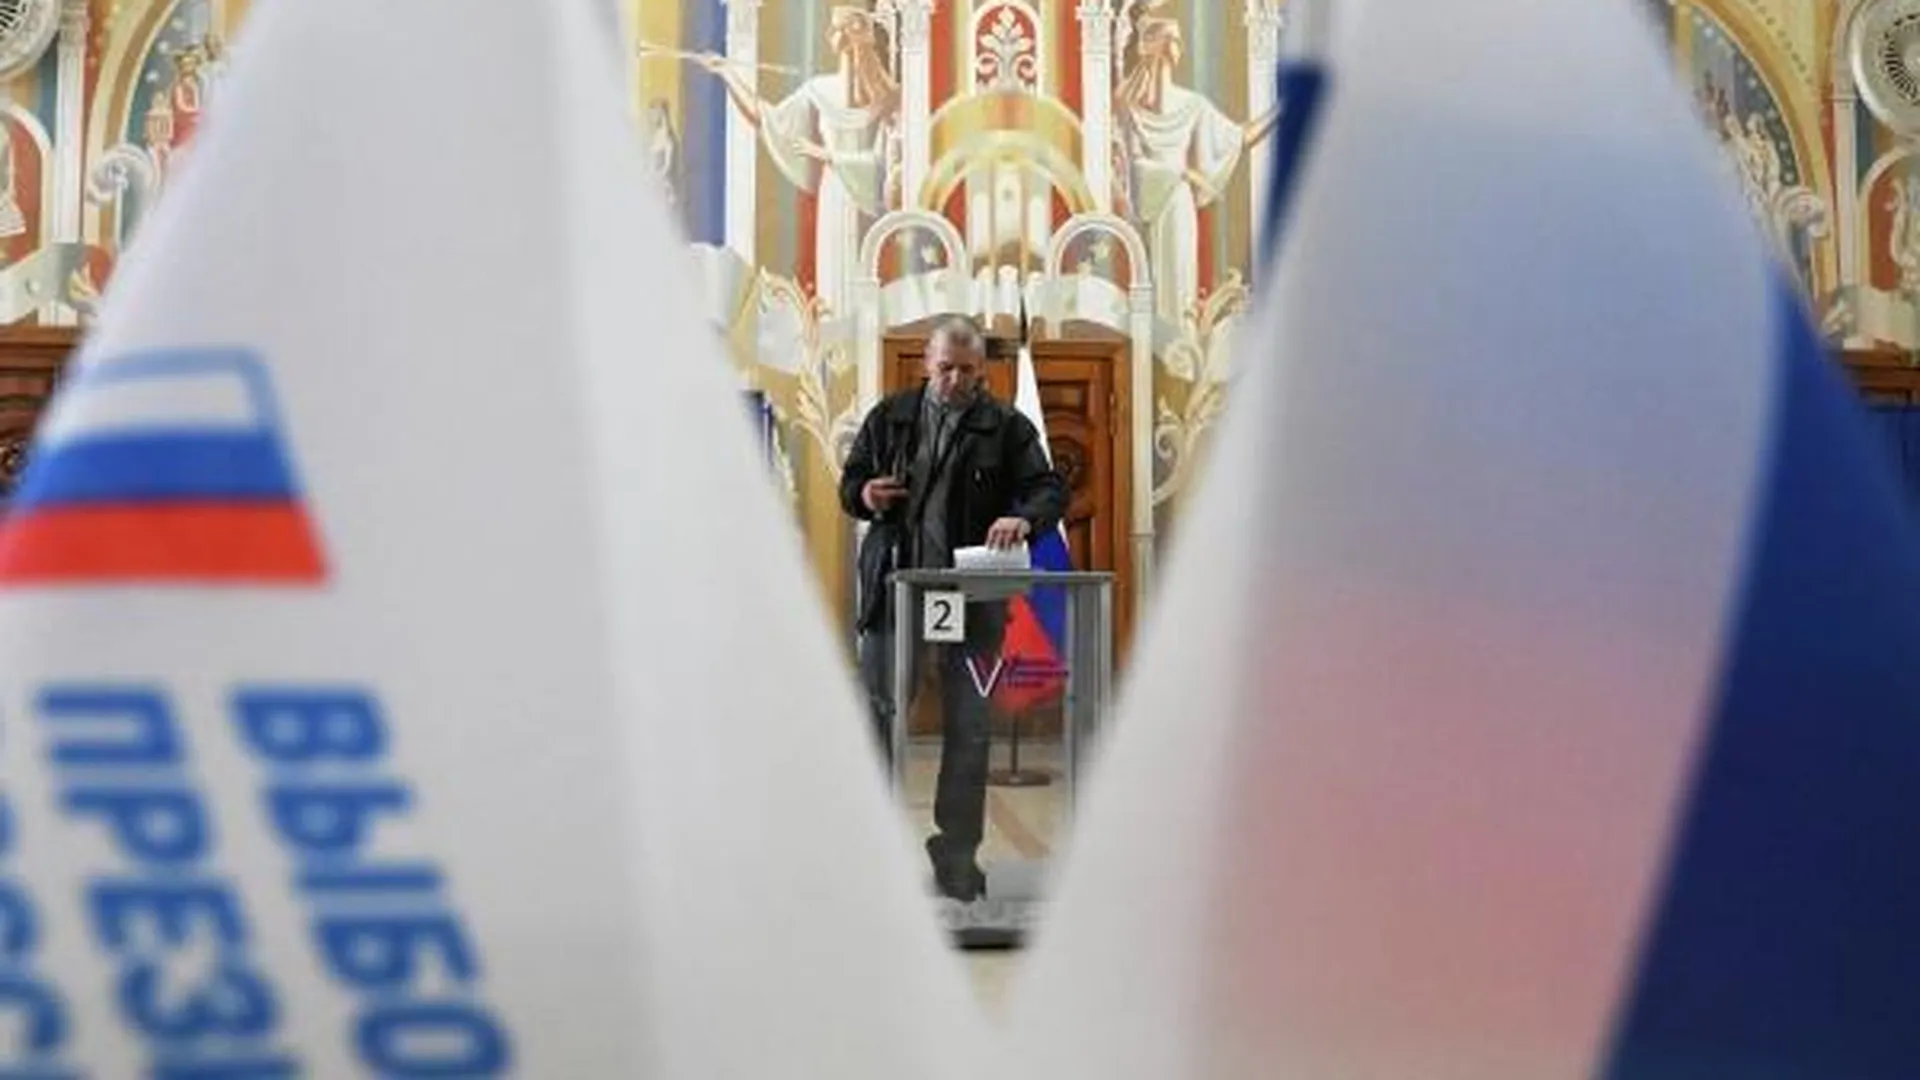 Фейк: 31,6 миллиона голосов за Путина на выборах президента сфальсифицировали